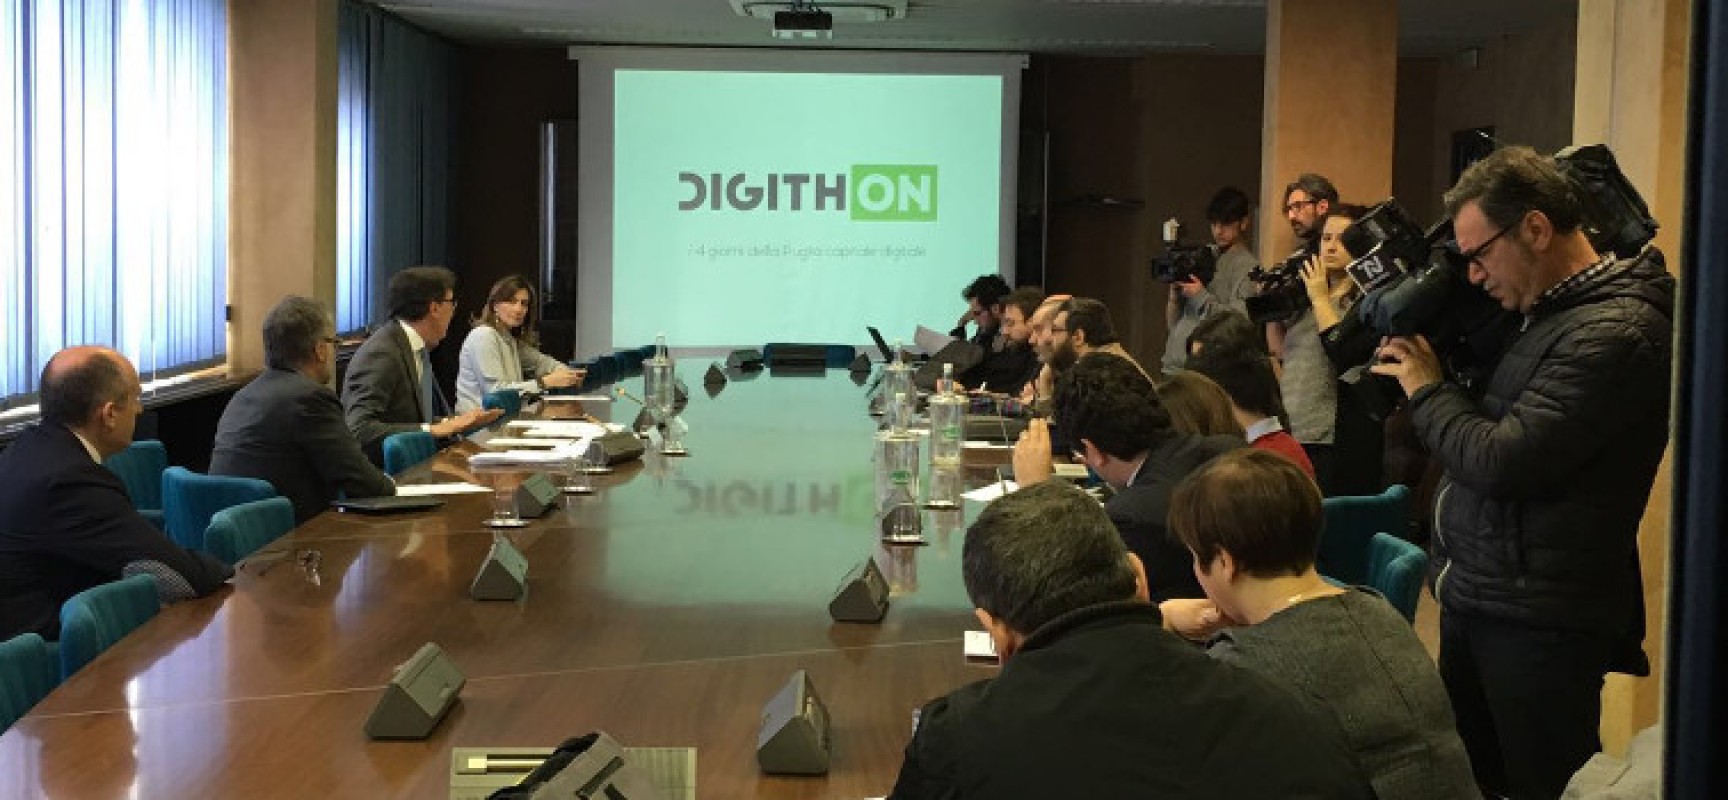 DigithON, il primo Hackathon italiano fa tappa anche a Bisceglie con numerosi ospiti illustri